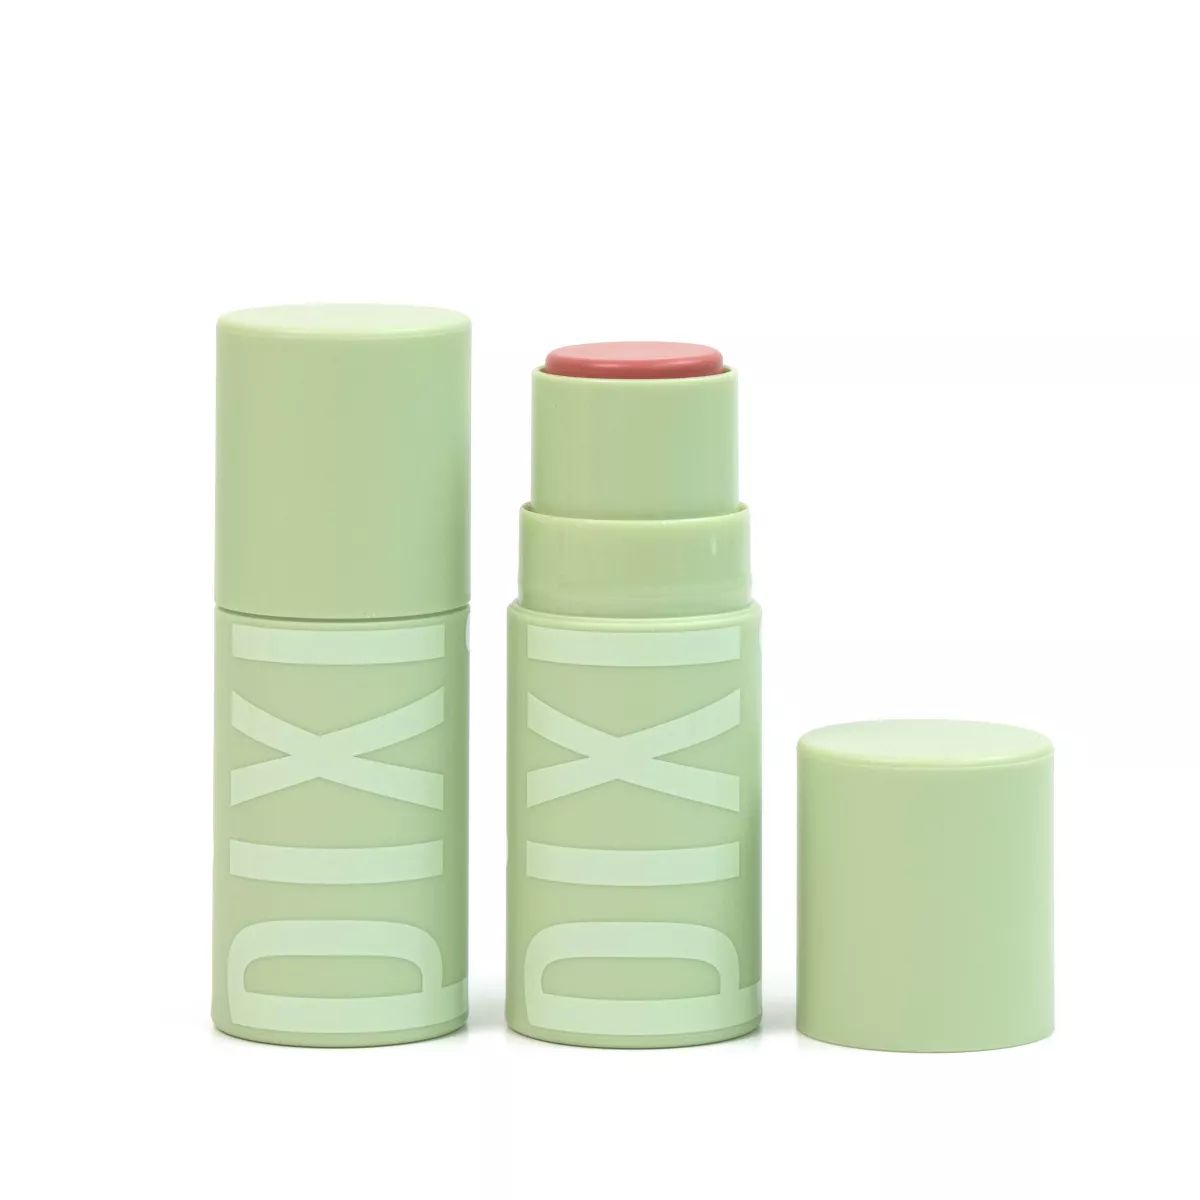 Pixi by Petra Hydra Treat Lip Makeup - Nectar Pink - 0.16 fl oz | Target